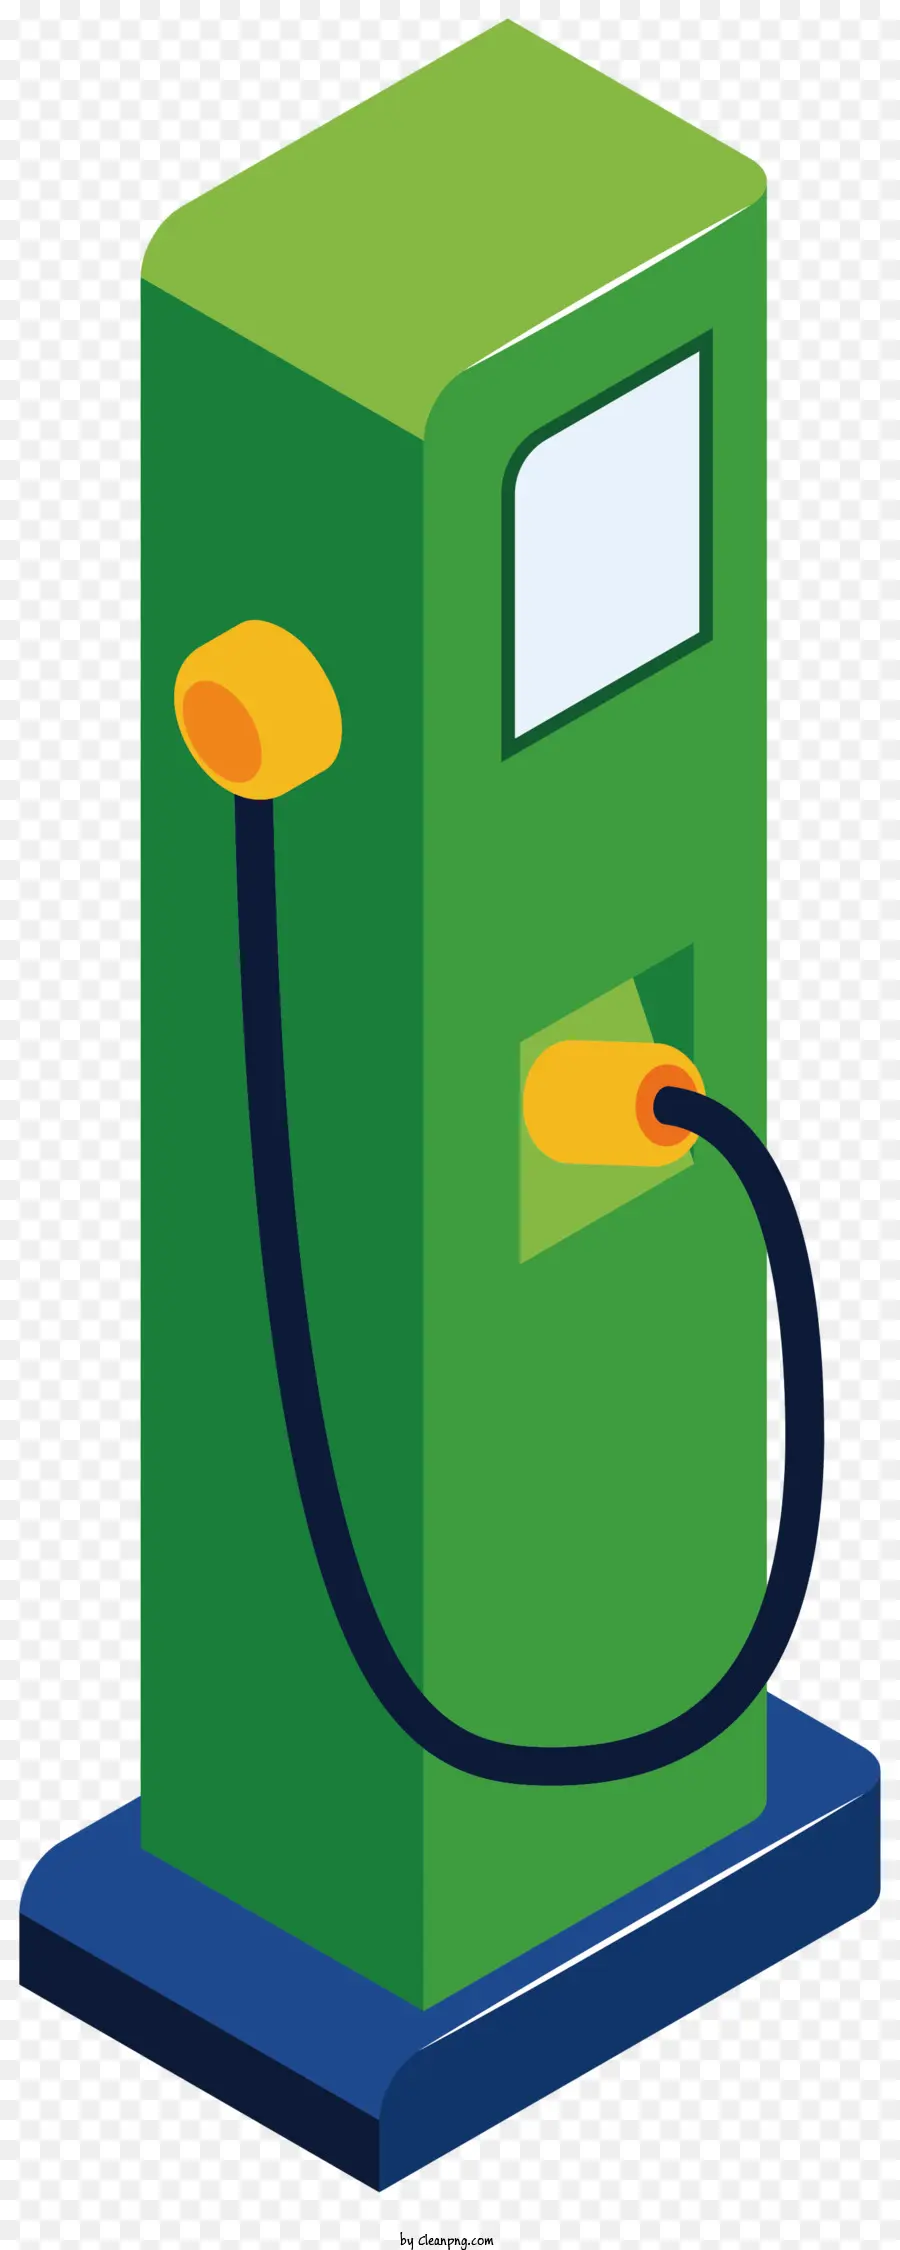 Pompa di gas Pompa di gas verde Pompa della pompa a gas aperta in apice Collegata alla pompa del gas Giallo Cord Electrical - Immagine chiara e semplice della pompa di gas verde